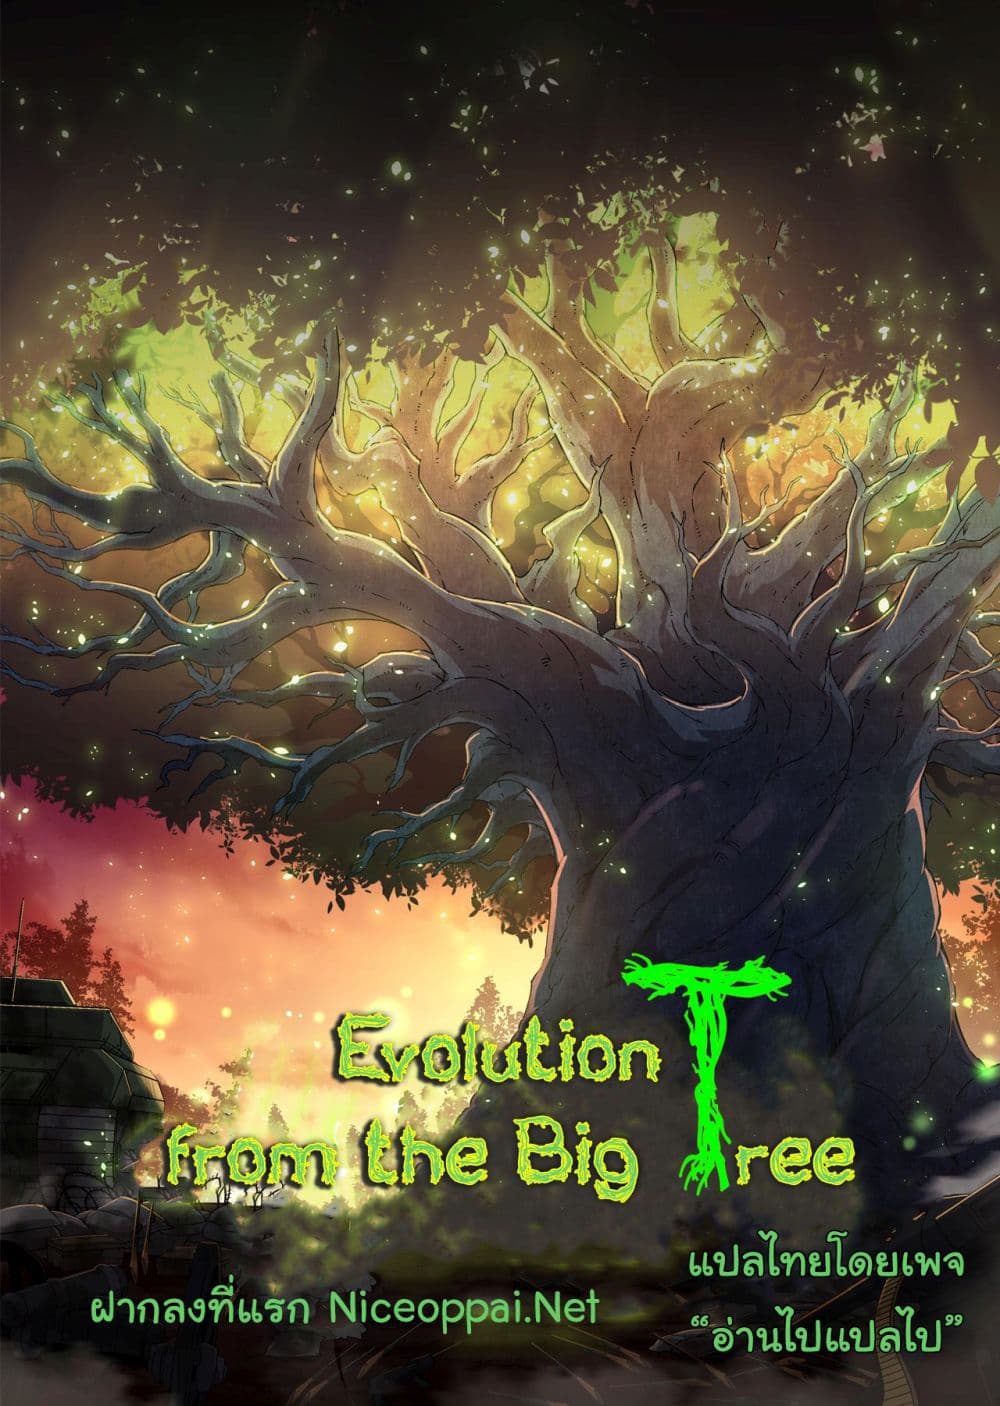 Evolution from the Big Tree Ã Â¸â€¢Ã Â¸Â­Ã Â¸â„¢Ã Â¸â€”Ã Â¸ÂµÃ Â¹Ë† 12 (1)